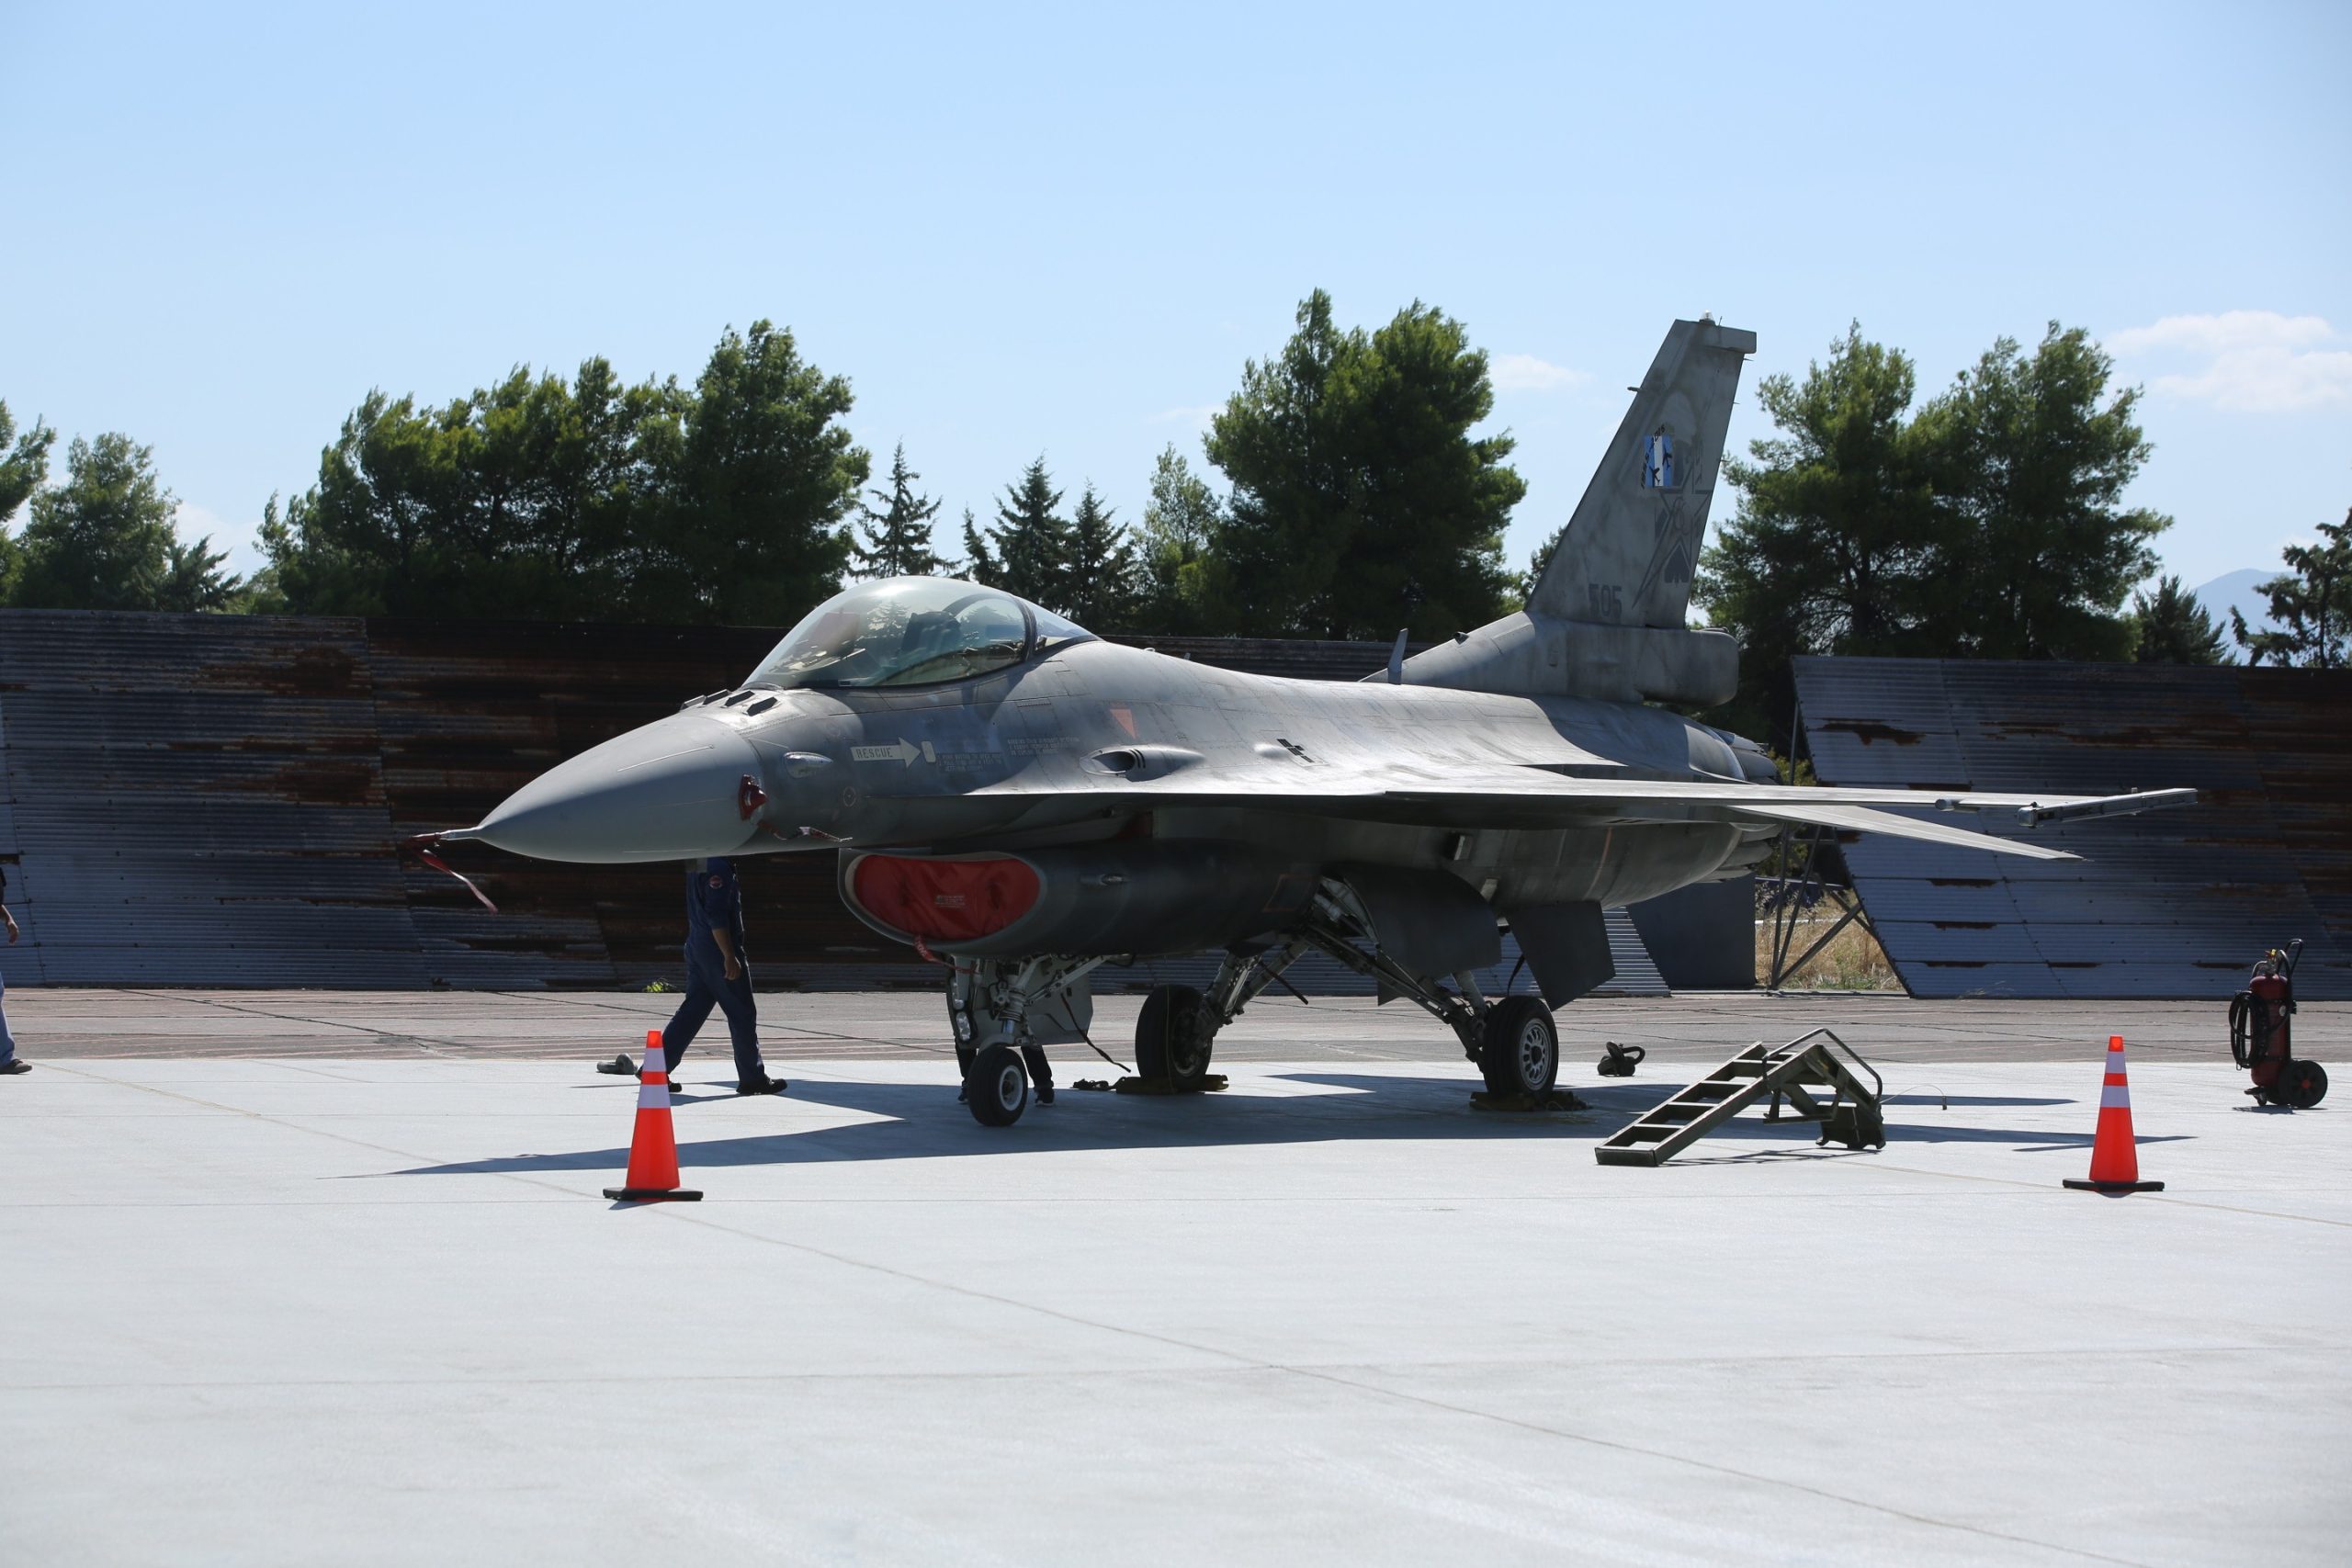 DAB HA CONSEGNATO IL PRIMO F-16 VIPER AGGIORNATO ALL'AIR FORCE